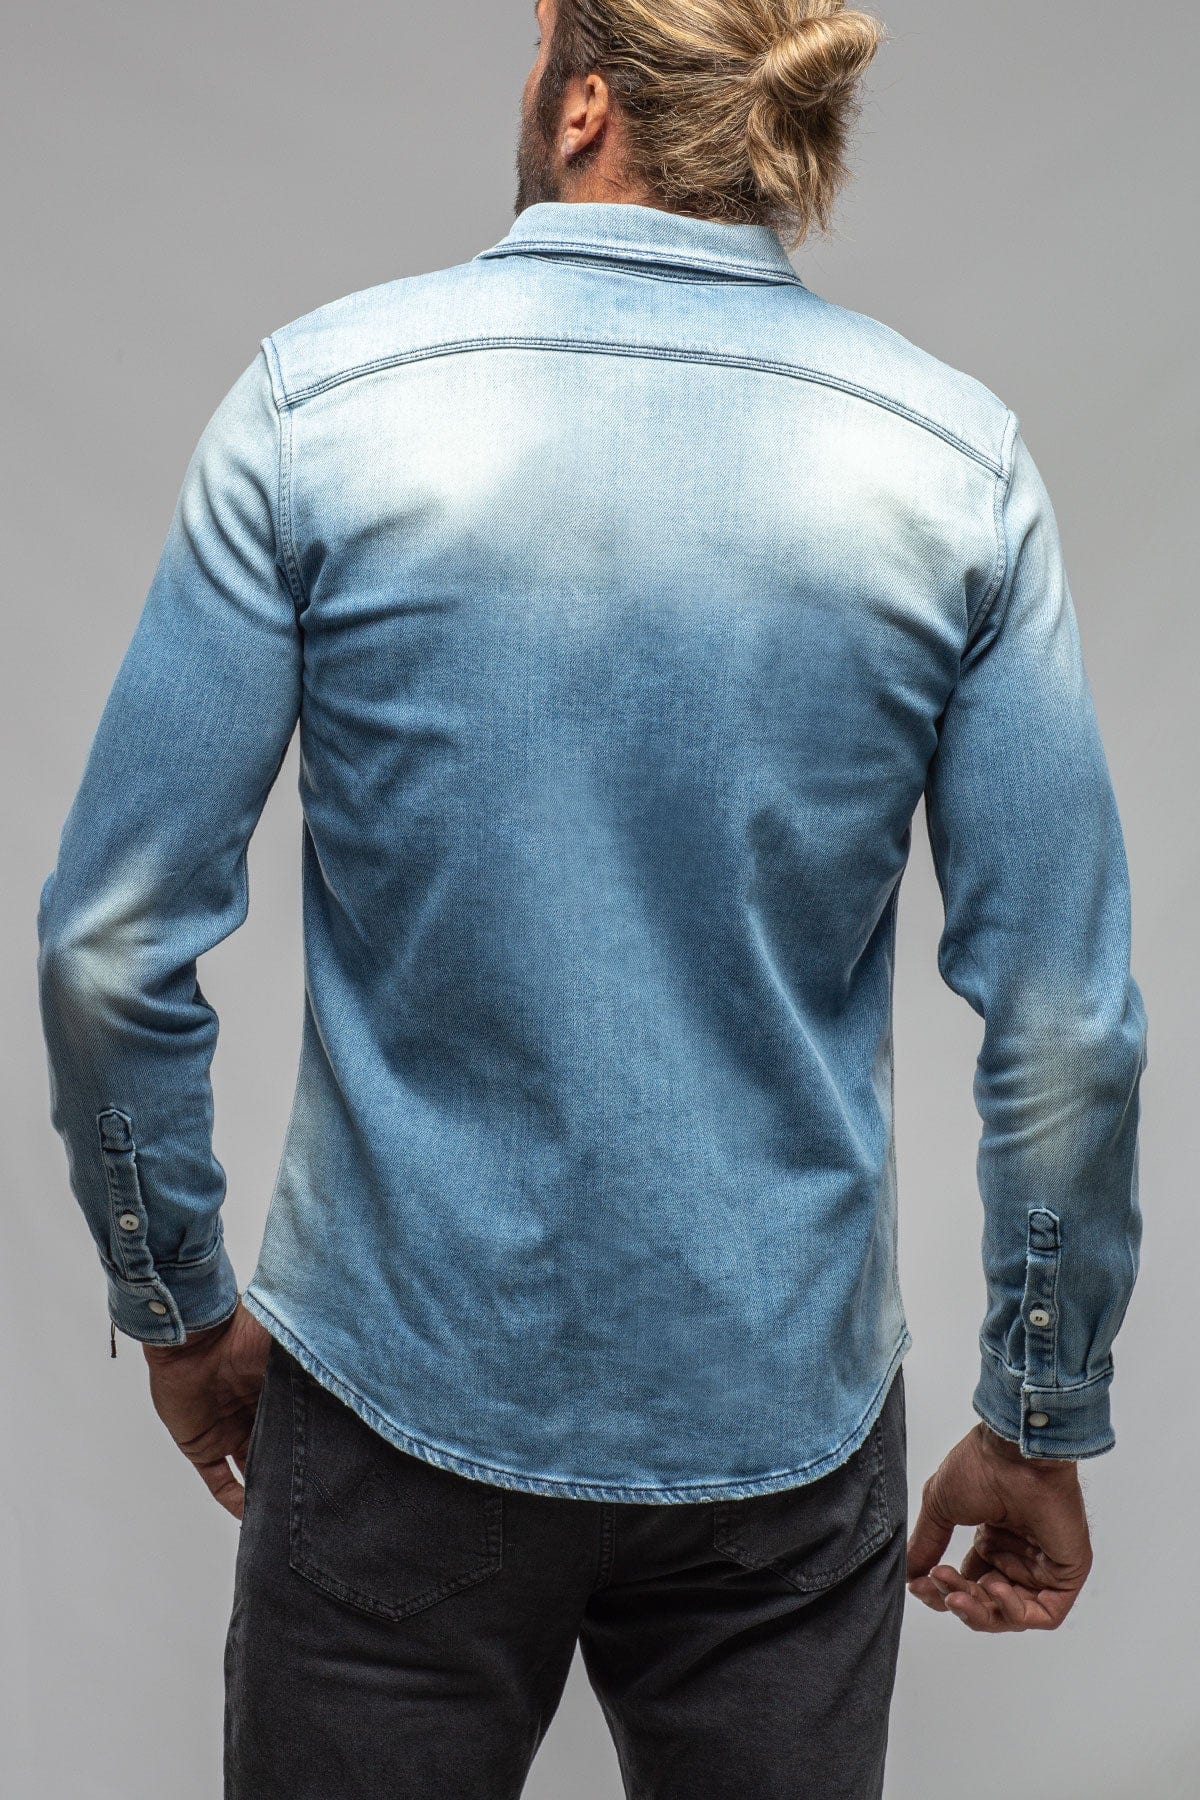 Denim Shirts Long Sleeve Blue Jeans Shirt Men | Denim Shirt Fleece Lining -  Quality - Aliexpress